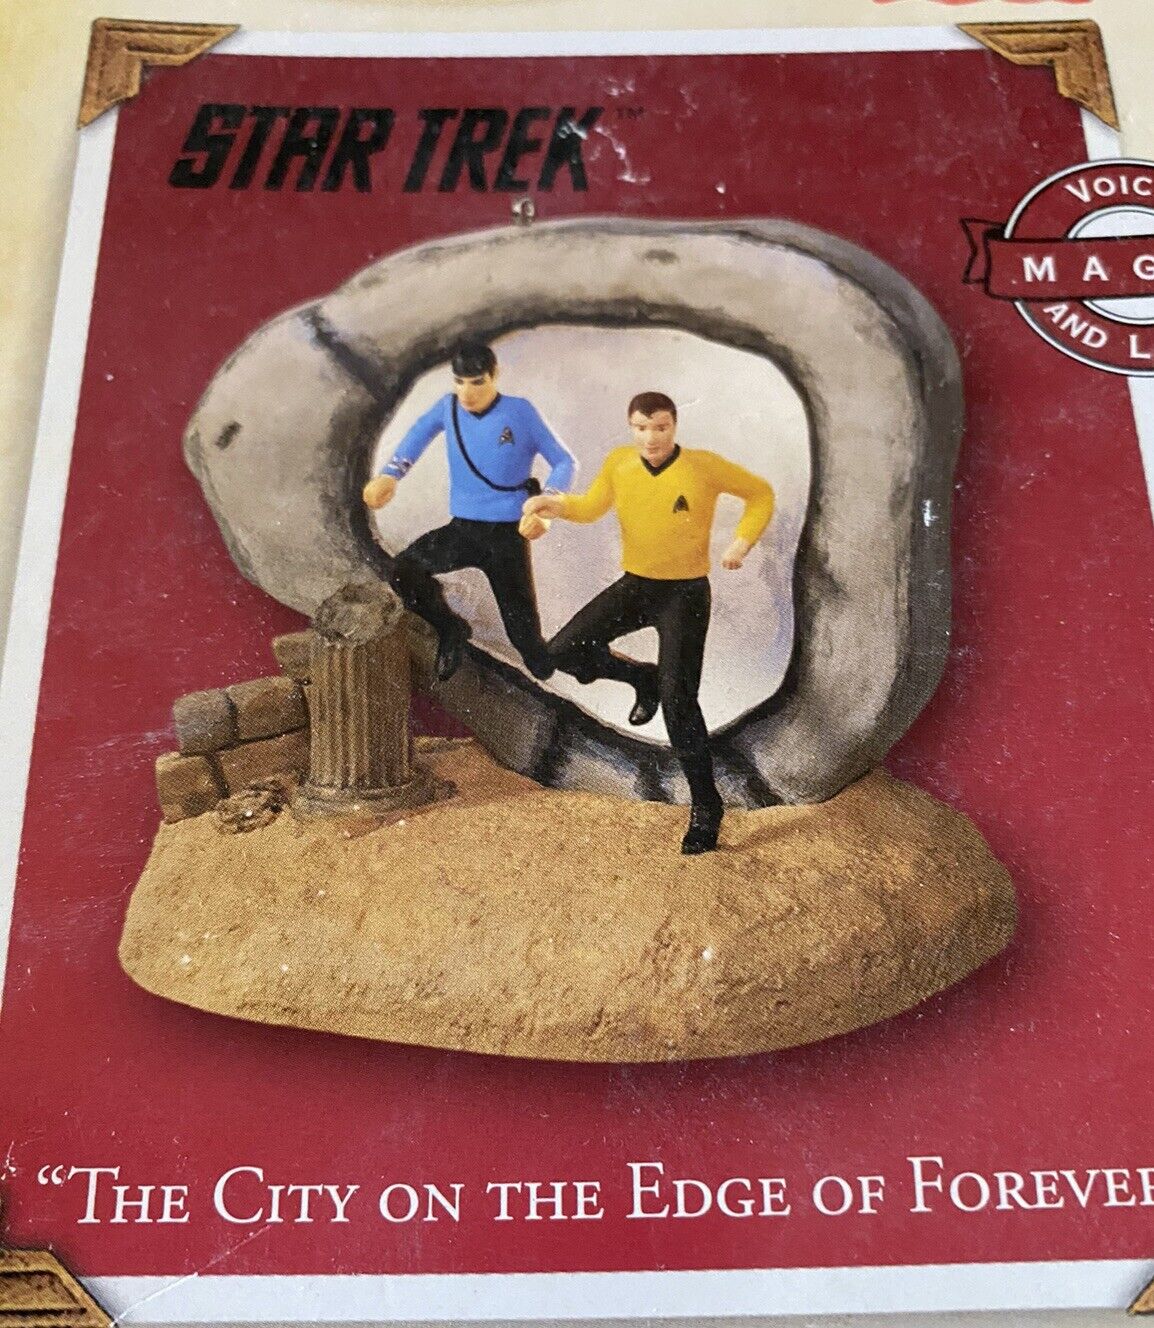 Hallmark Lighted Ornament “The City On The Edge Of Forever”Star Trek.